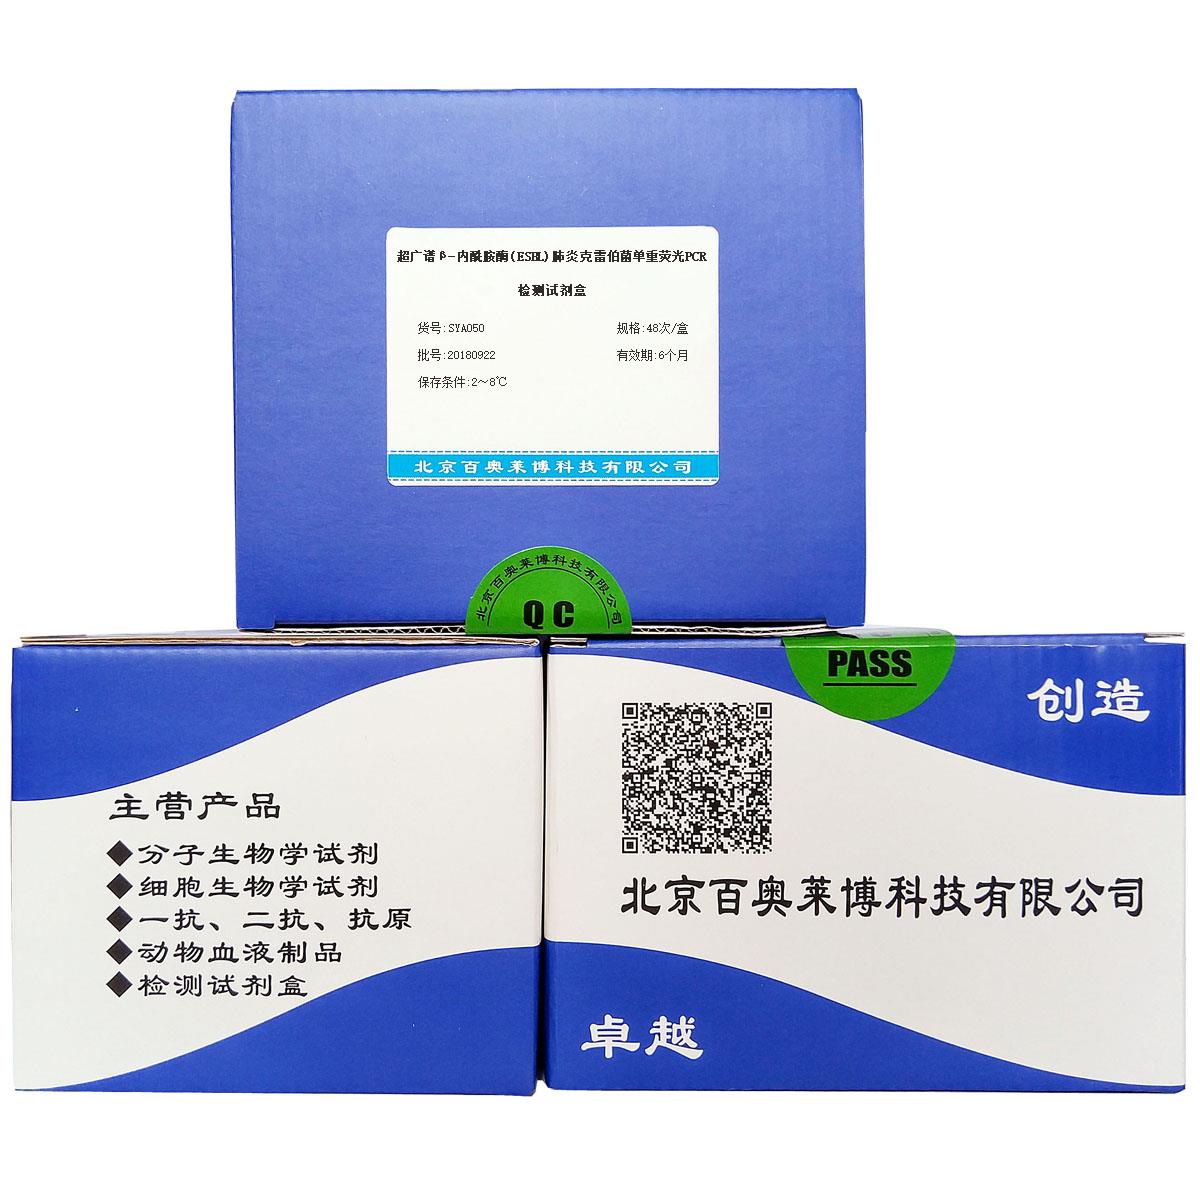 超广谱β-内酰胺酶(ESBL)肺炎克雷伯菌单重荧光PCR检测试剂盒